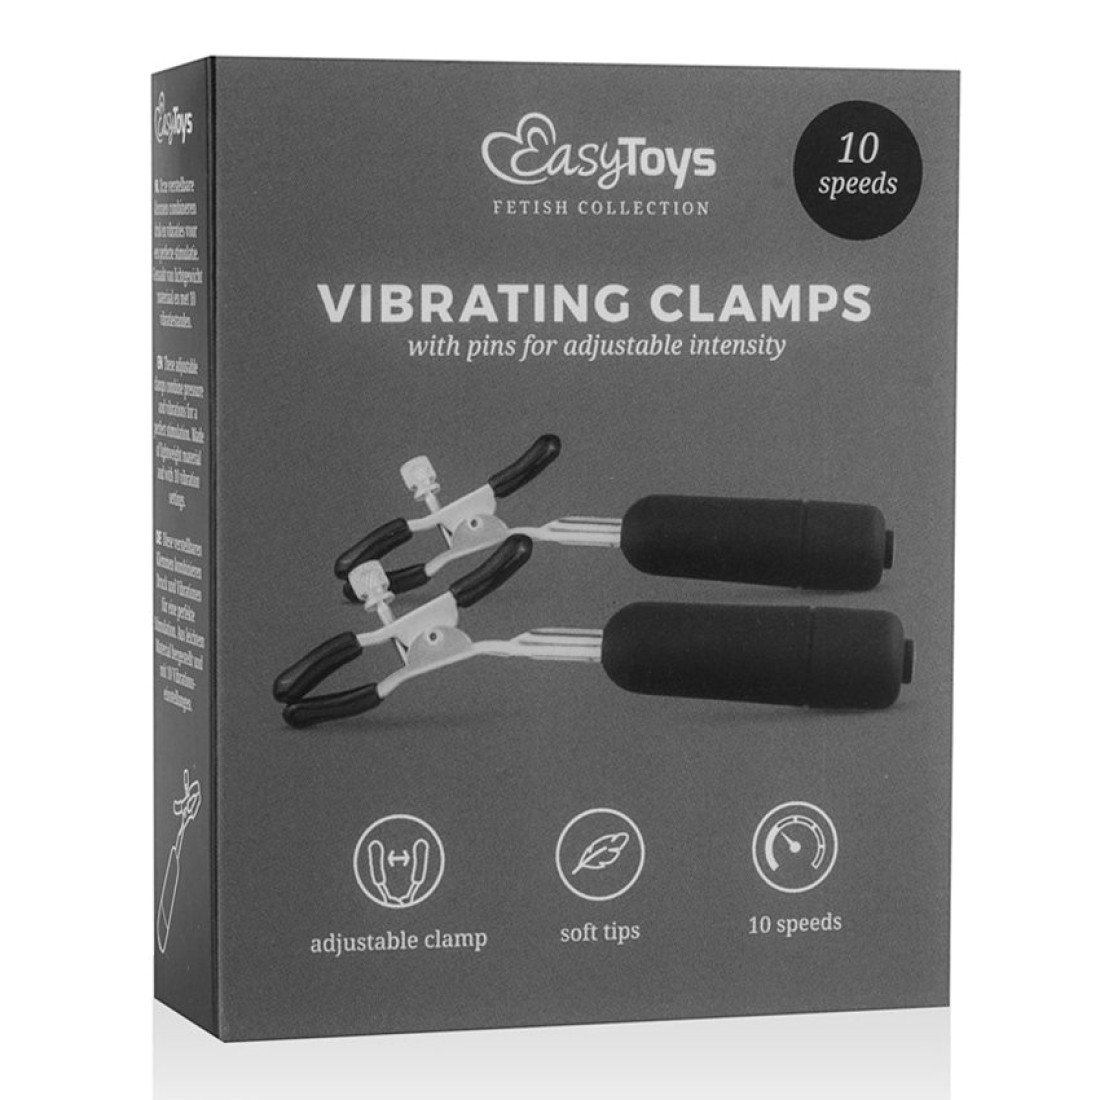 Vibruojantys spenelių spaustukai „Vibrating Clamps“ - EasyToys